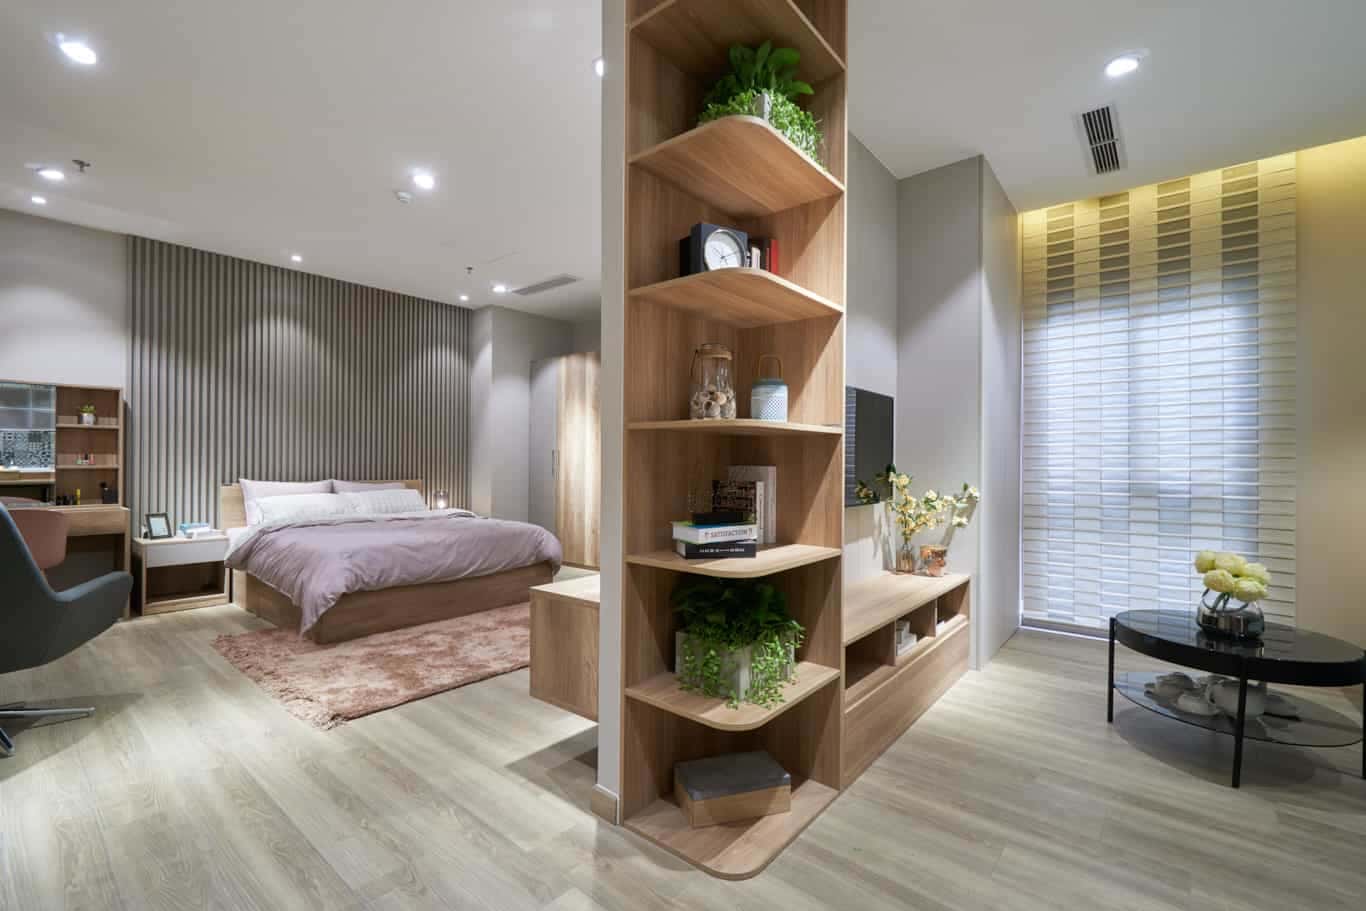 Mẫu thiết kế phòng ngủ hiện đại 25 - 30 m2 